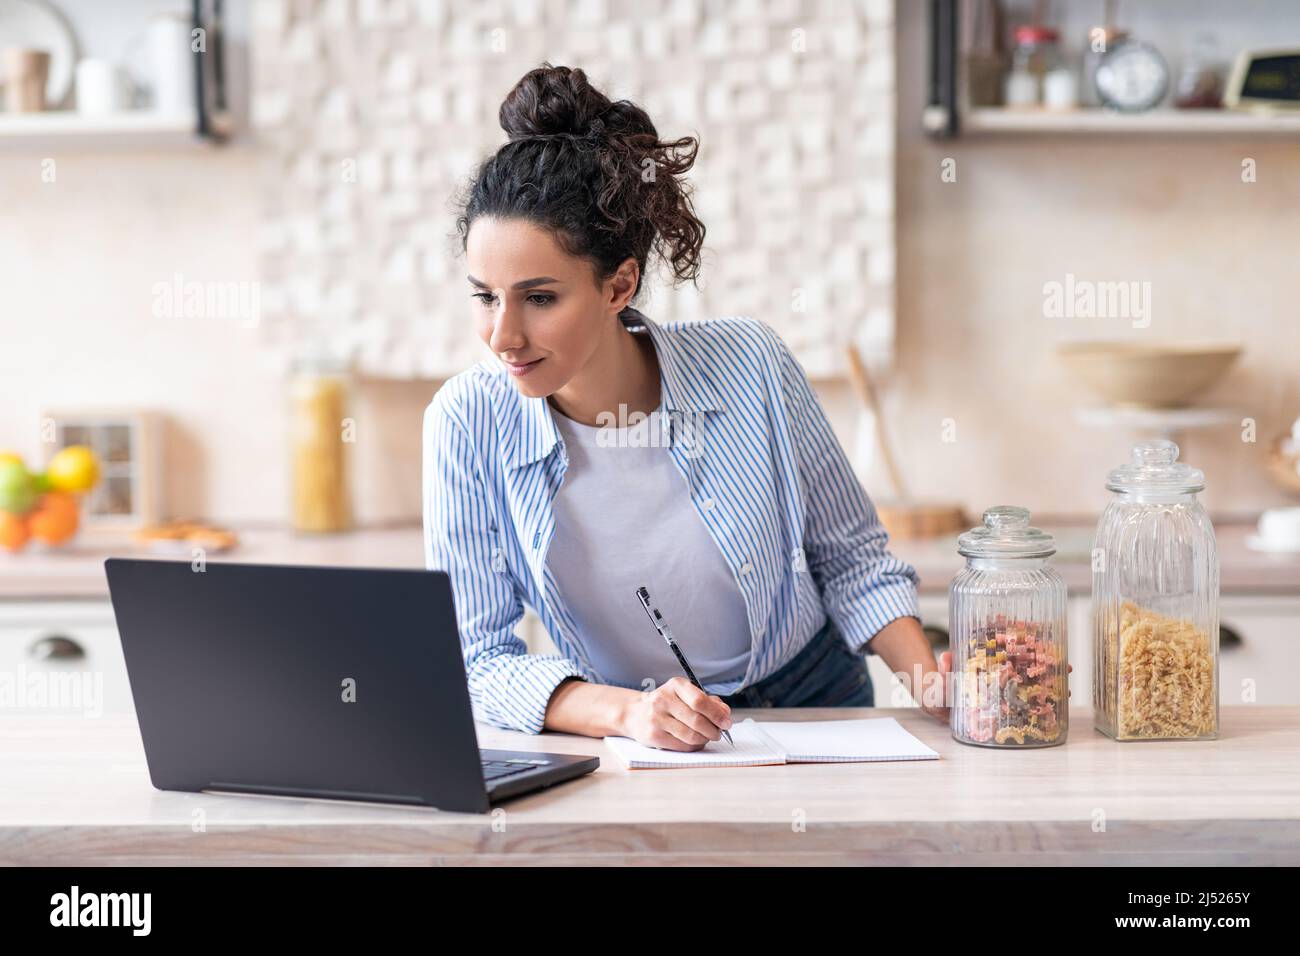 Latino femme écrivant une nouvelle recette regardant des leçons en ligne sur ordinateur portable dans la cuisine lumineuse intérieur, espace de copie Banque D'Images